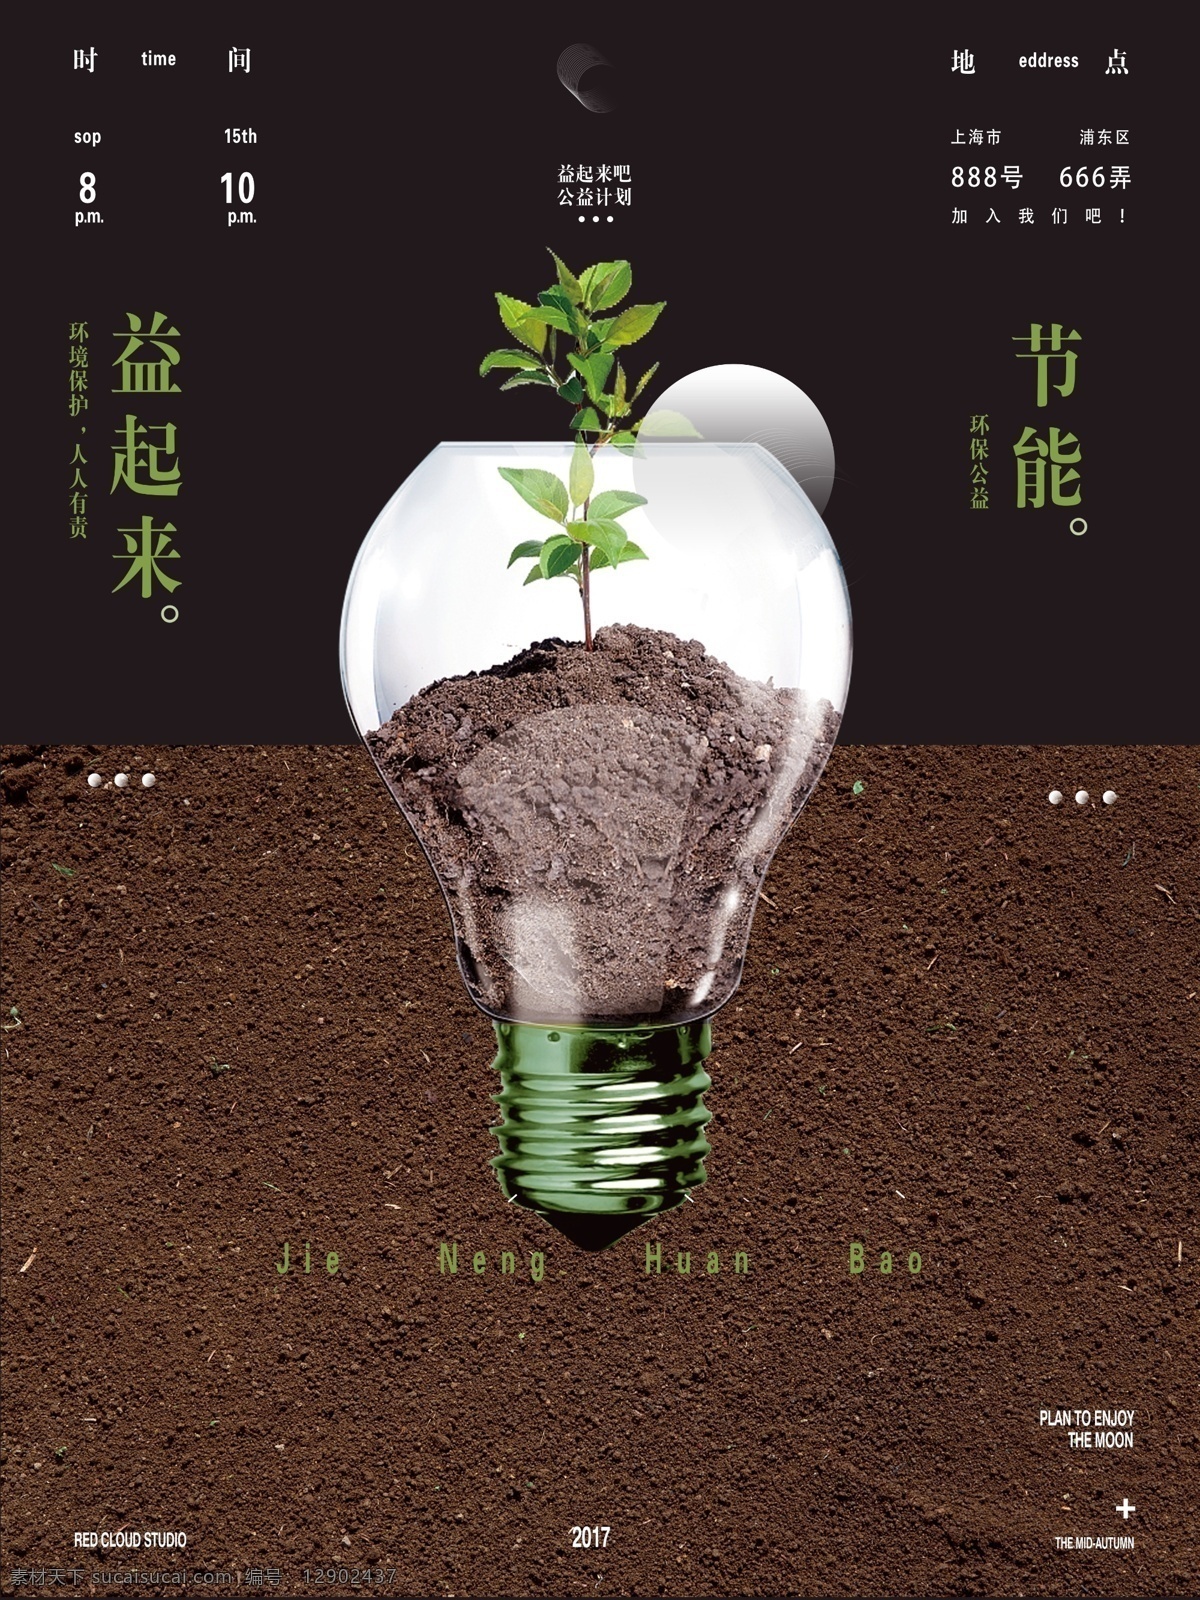 黑色 简约 节能环保 公益 宣传海报 泥土 树苗 节能 灯泡 电灯